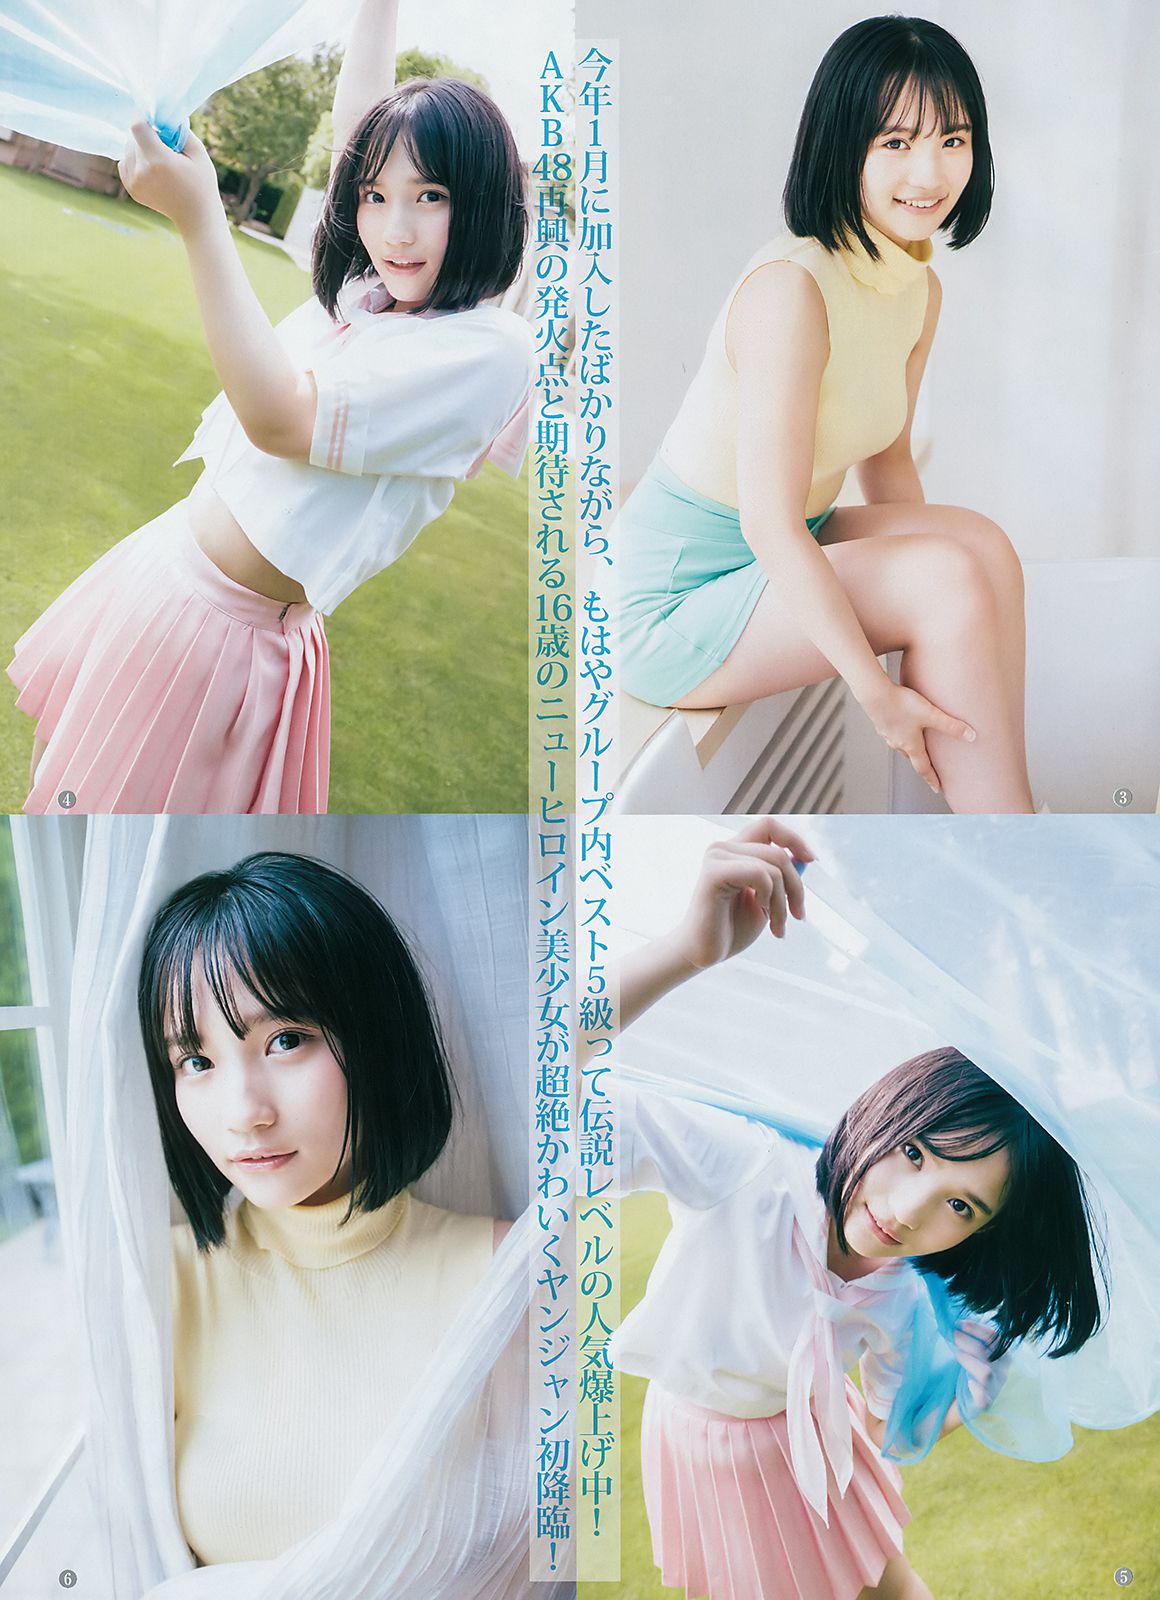 Hirate Yurina Iori Moe Yahagi Moeka [Weekly Young Jump] 2018 No.41 Photo Magazine Page 14 No.bd1a60